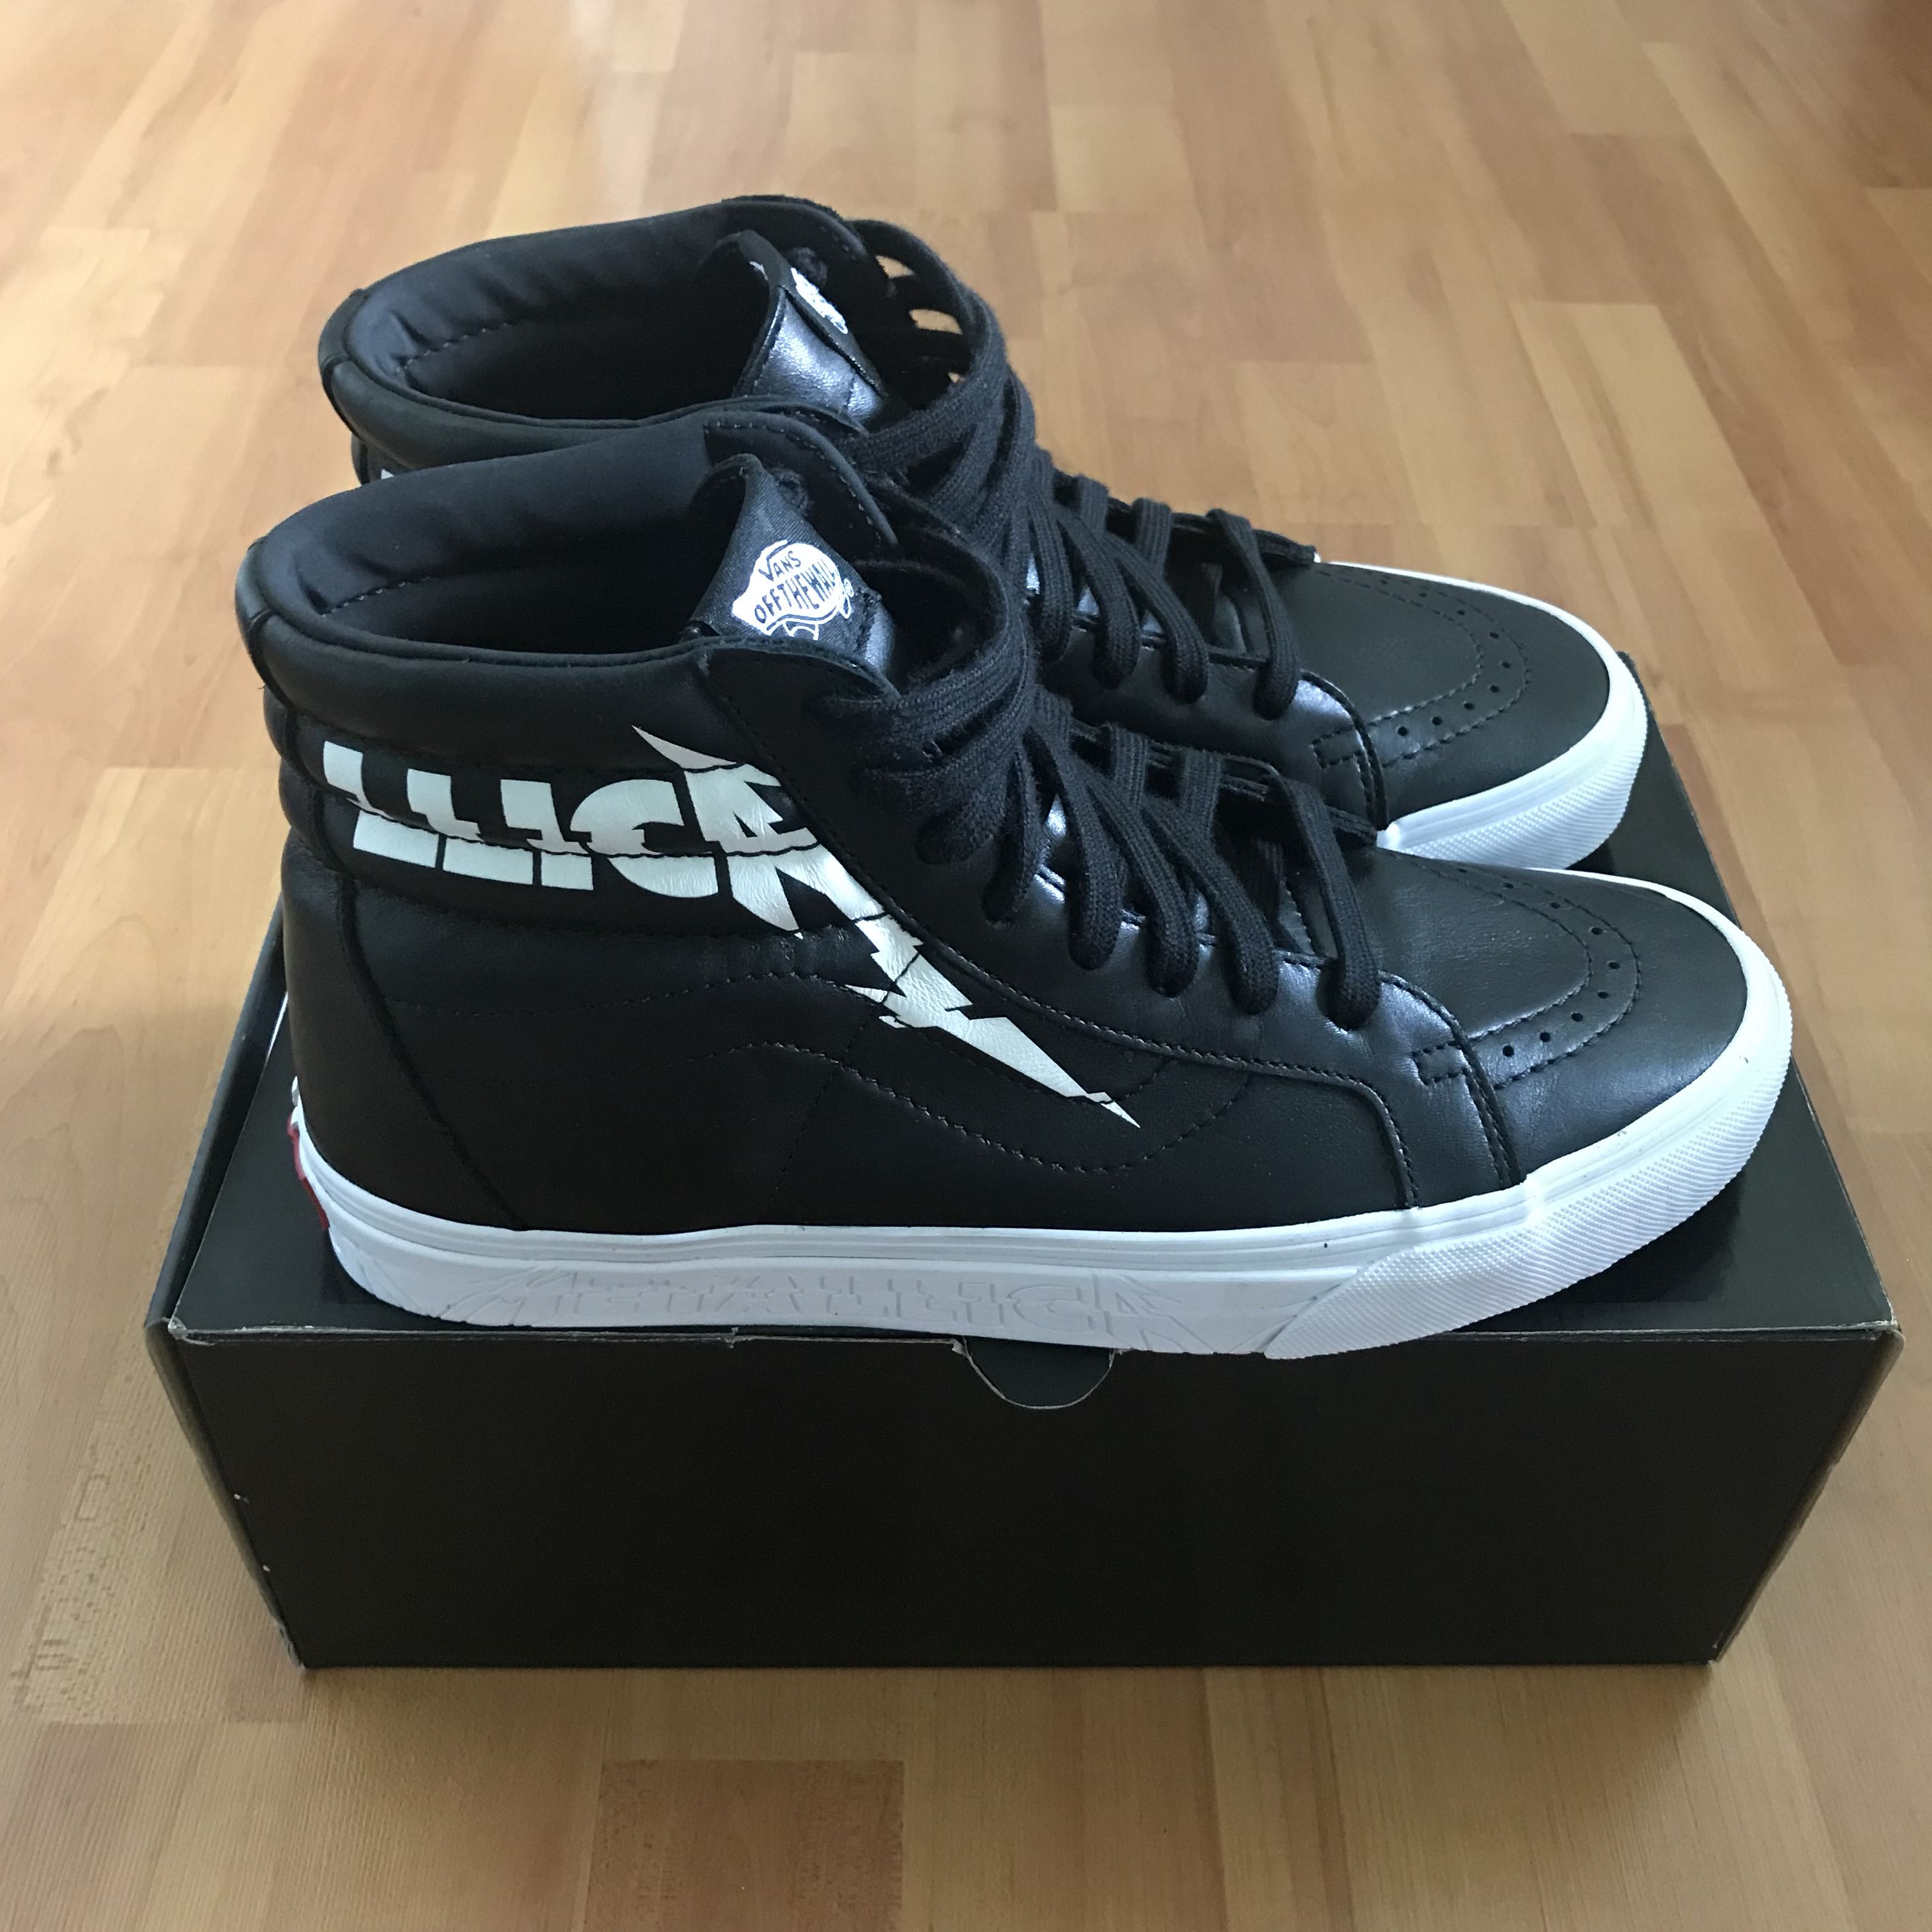 Vans Sk8-Hi Metallica Shoes - Size 12